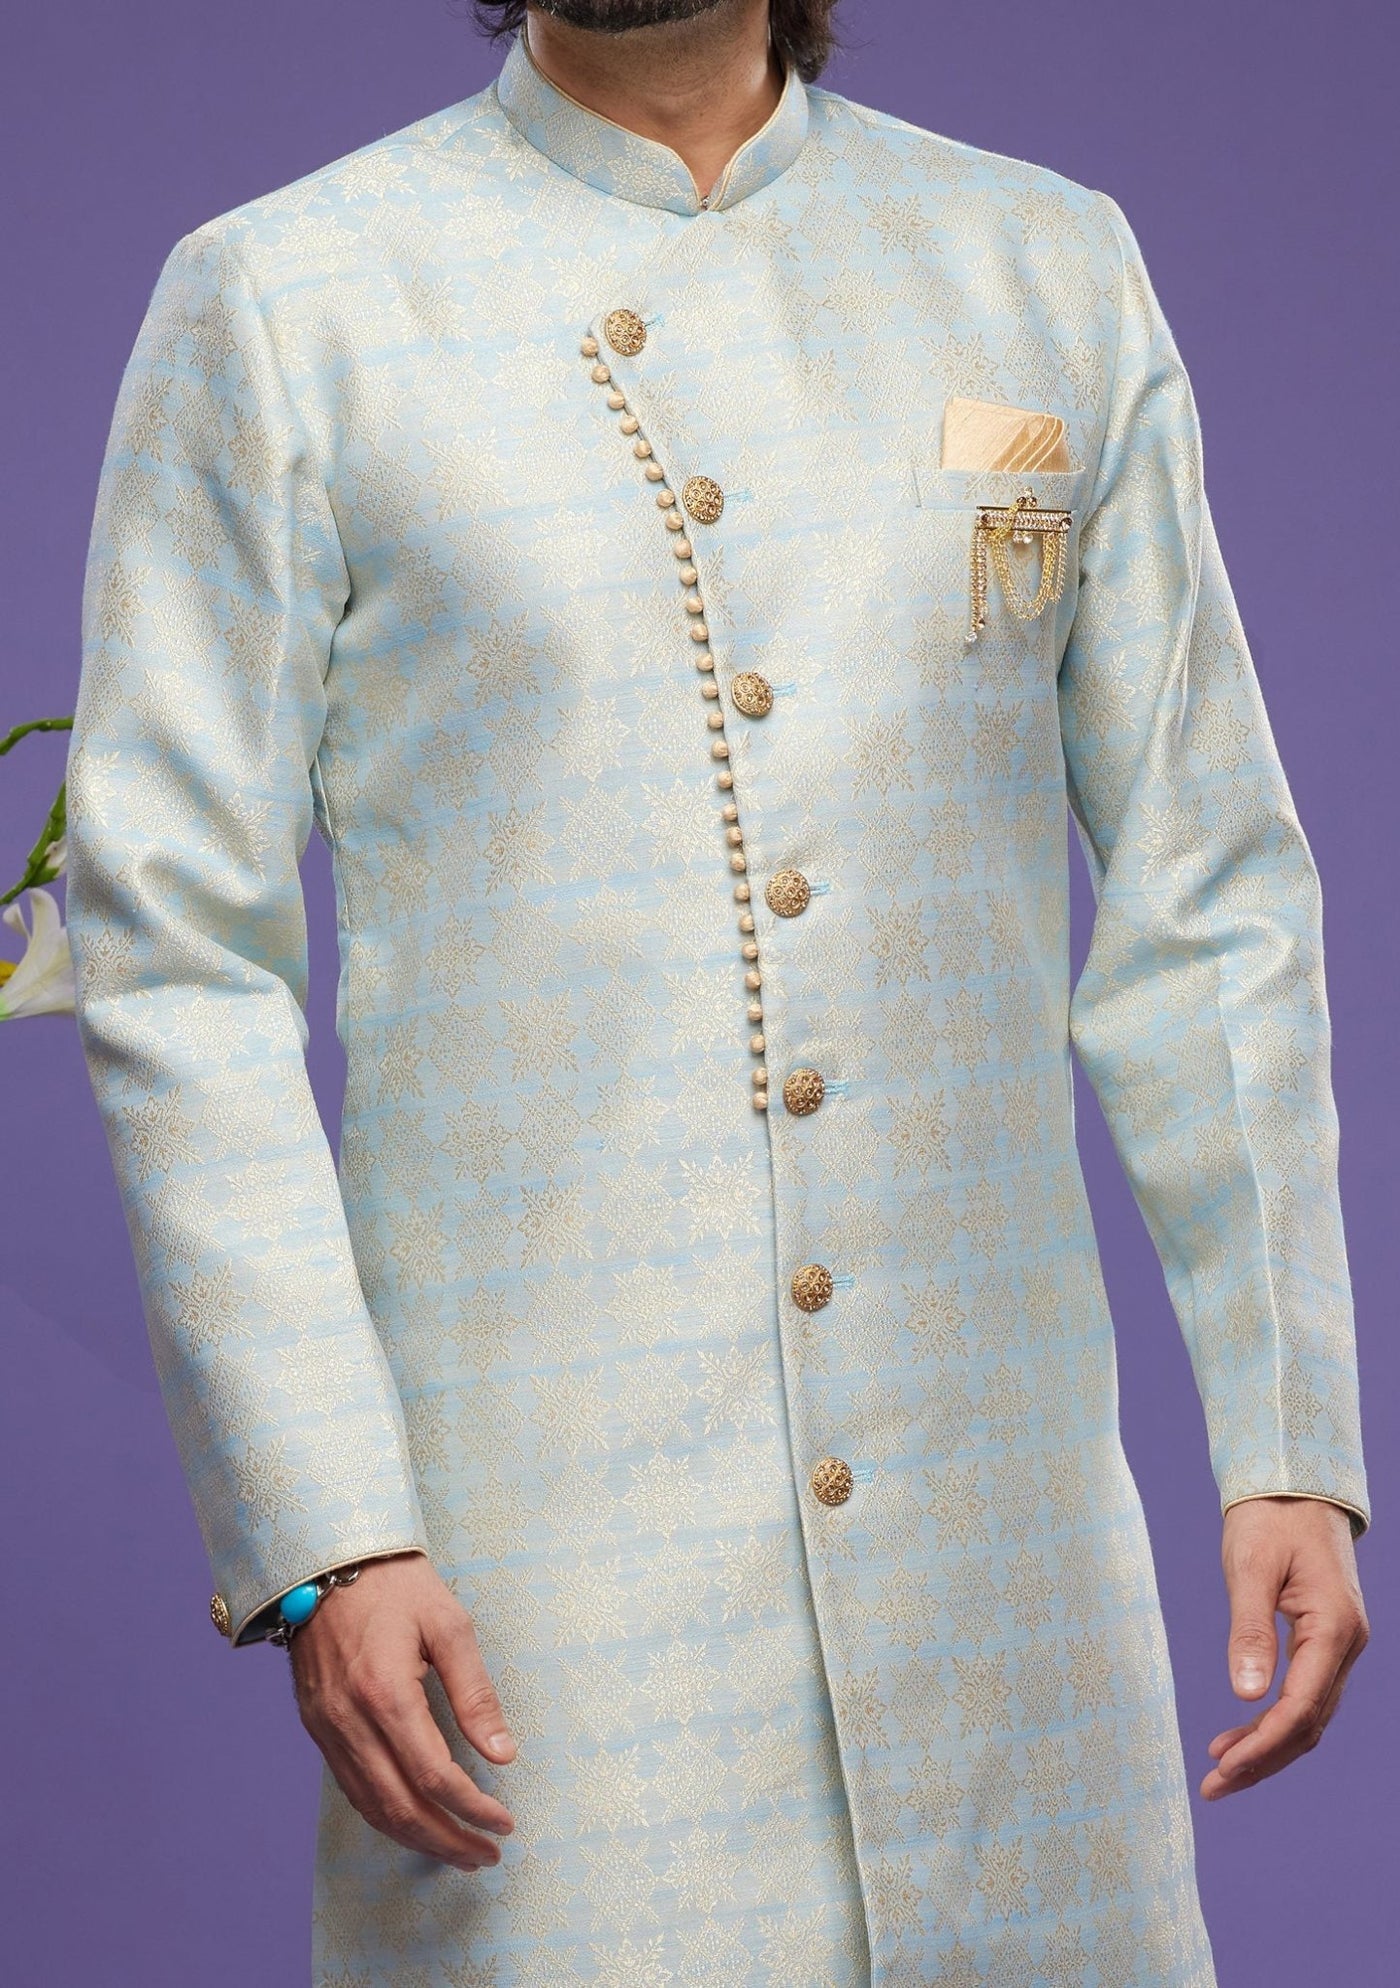 Men's Semi Indo Western Party Wear Sherwani Suit - db23866